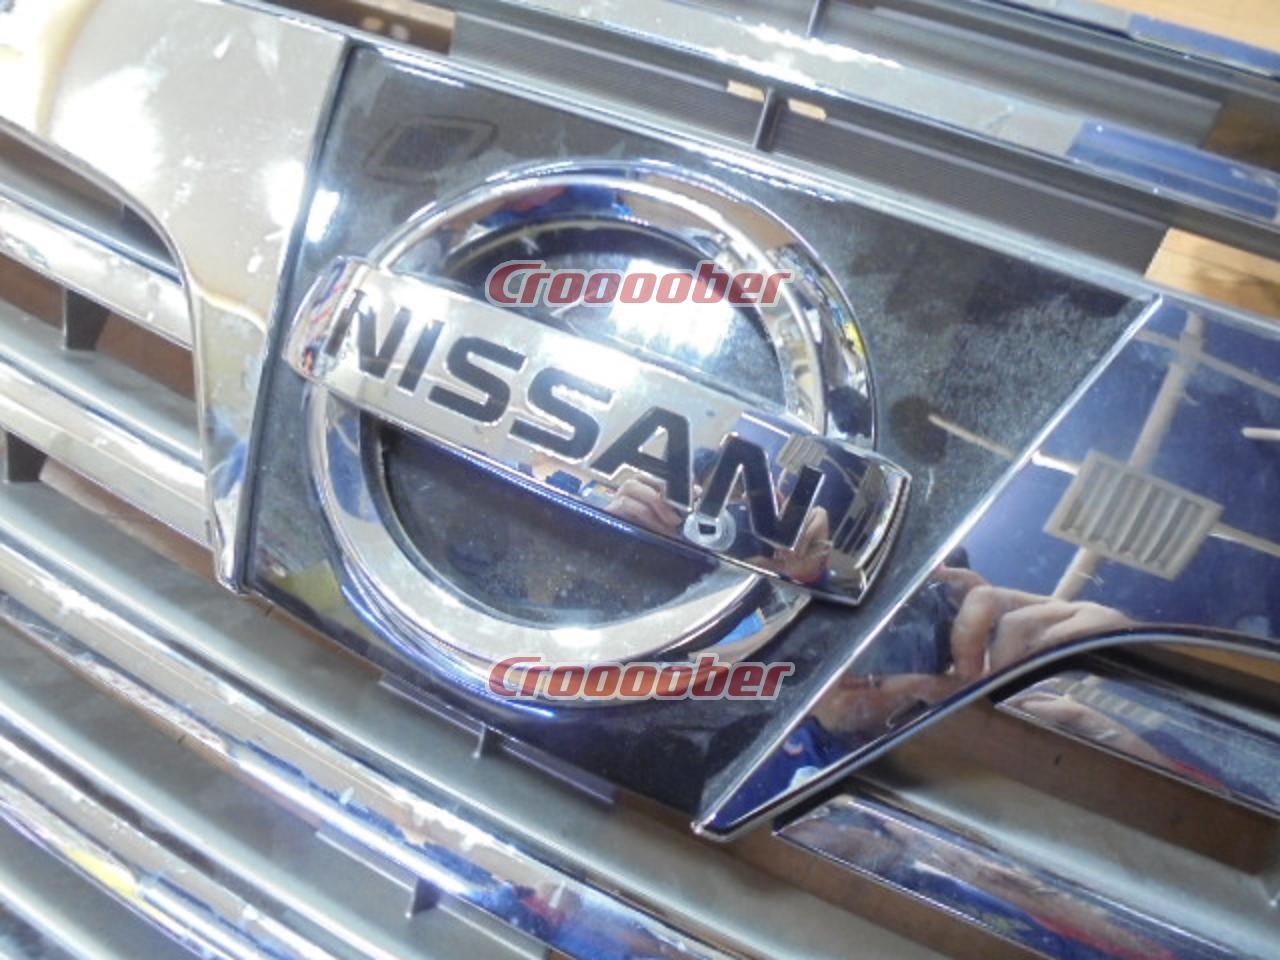 NISSAN 日産 E52 エルグランド 前期純正フロントグリル + メーカー不明